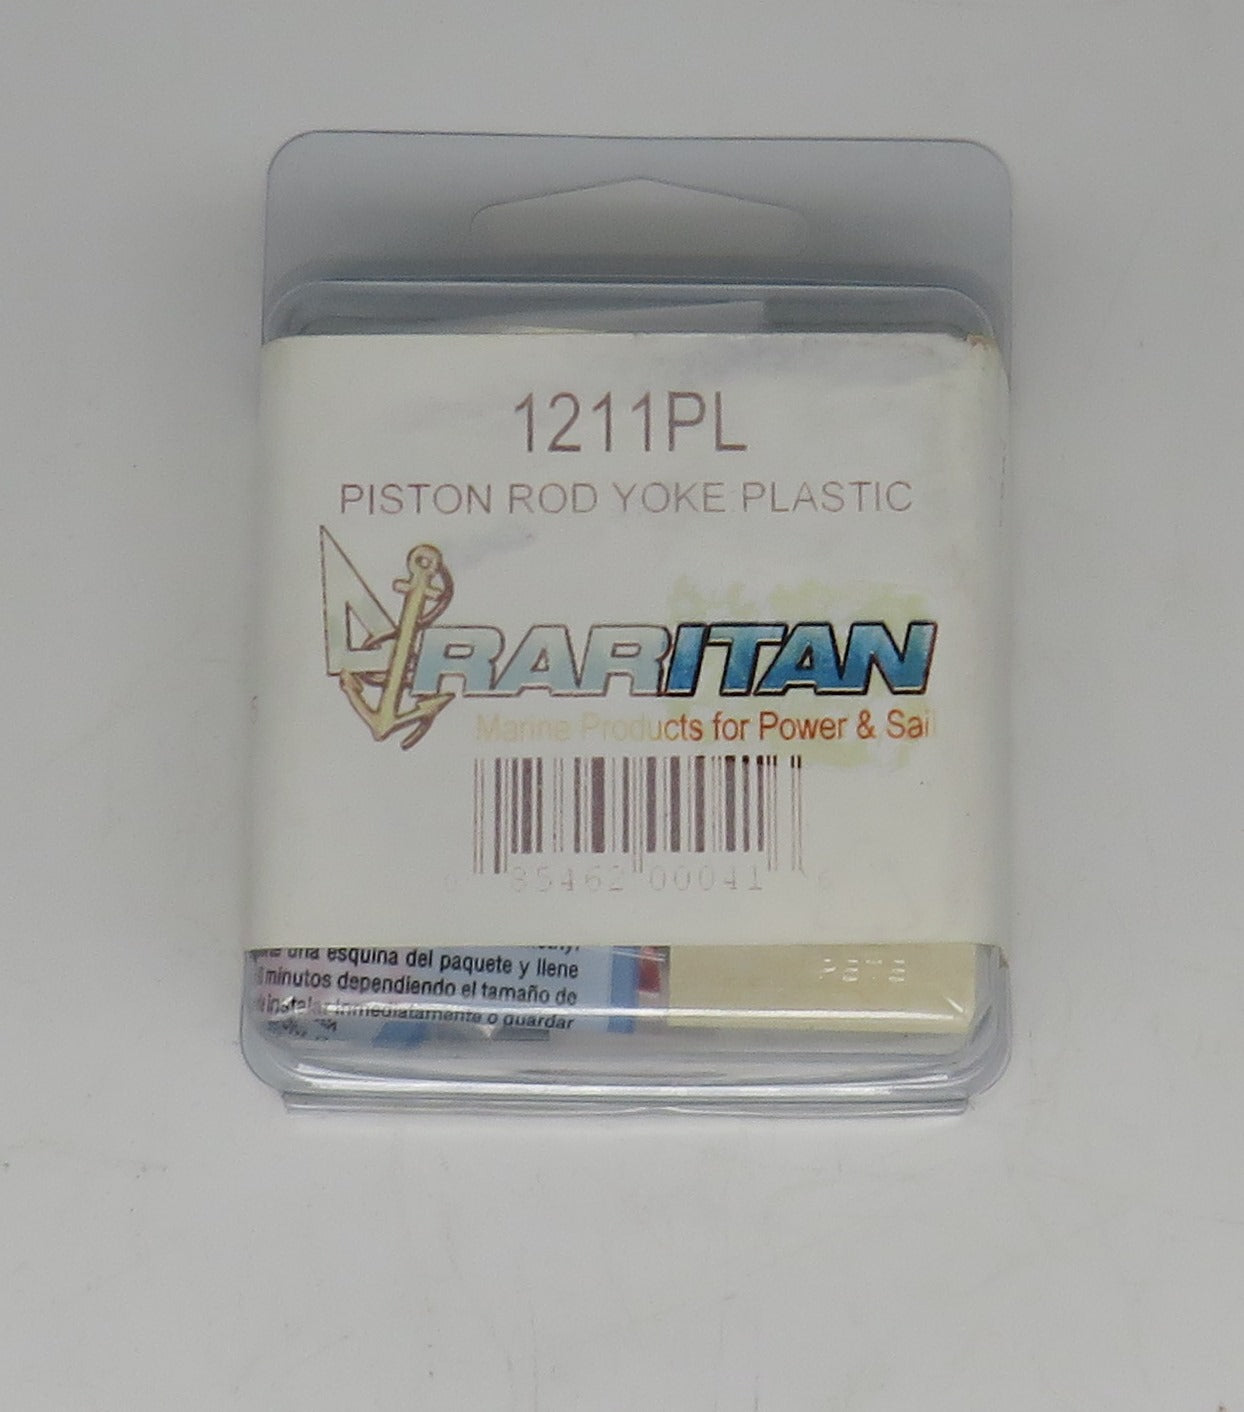 1211PL Raritan Piston Rod Yoke Plastic